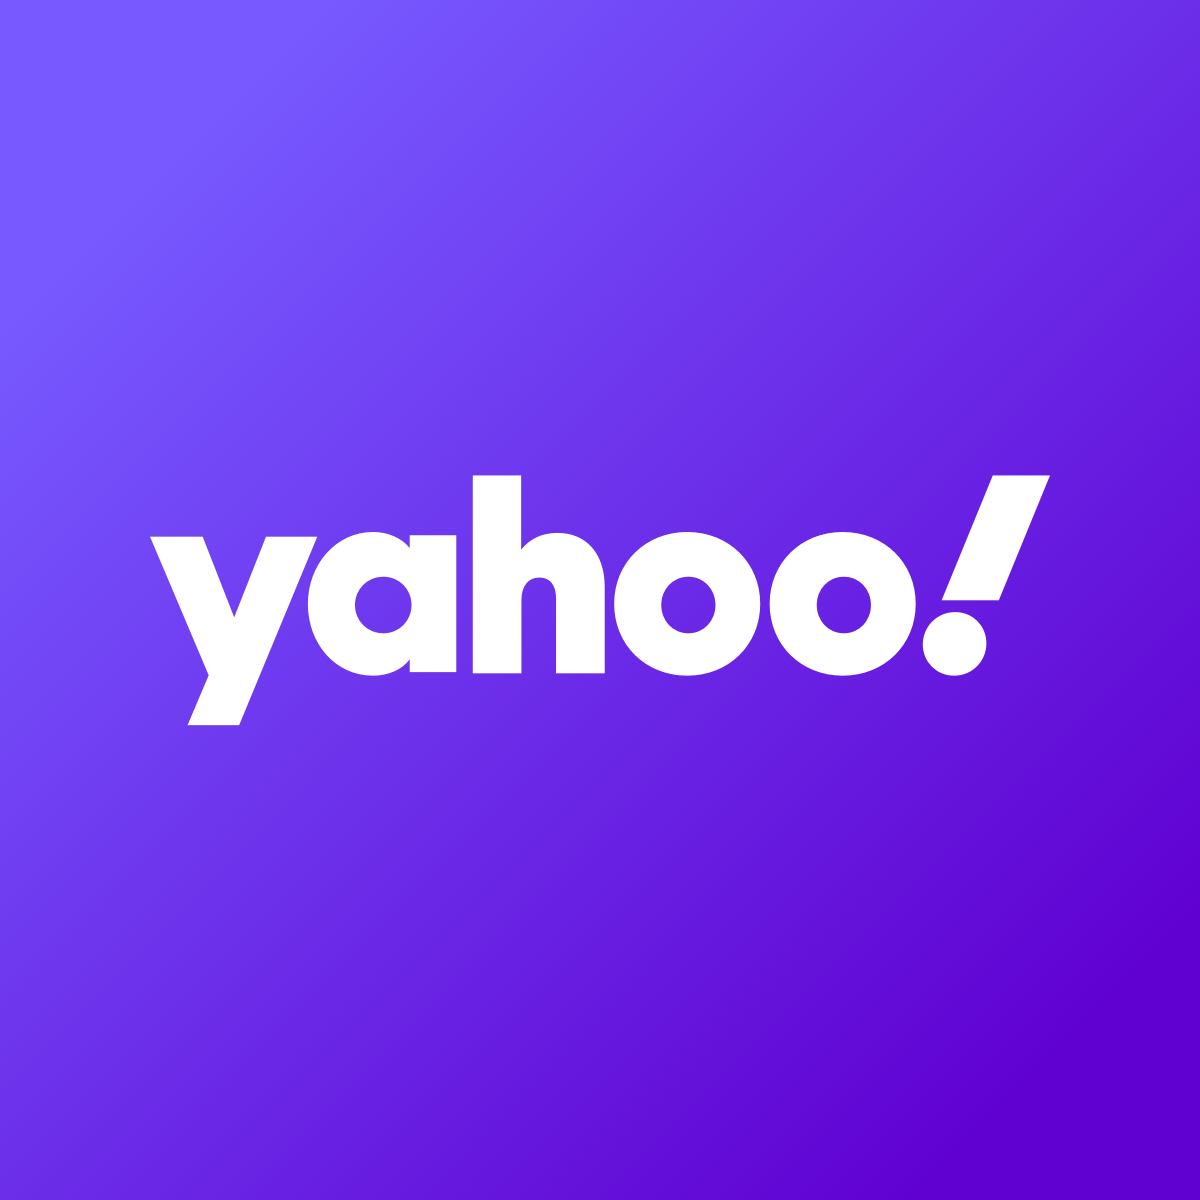 Israel's Partner Communications Q3 profit, revenue rise - Yahoo Finance